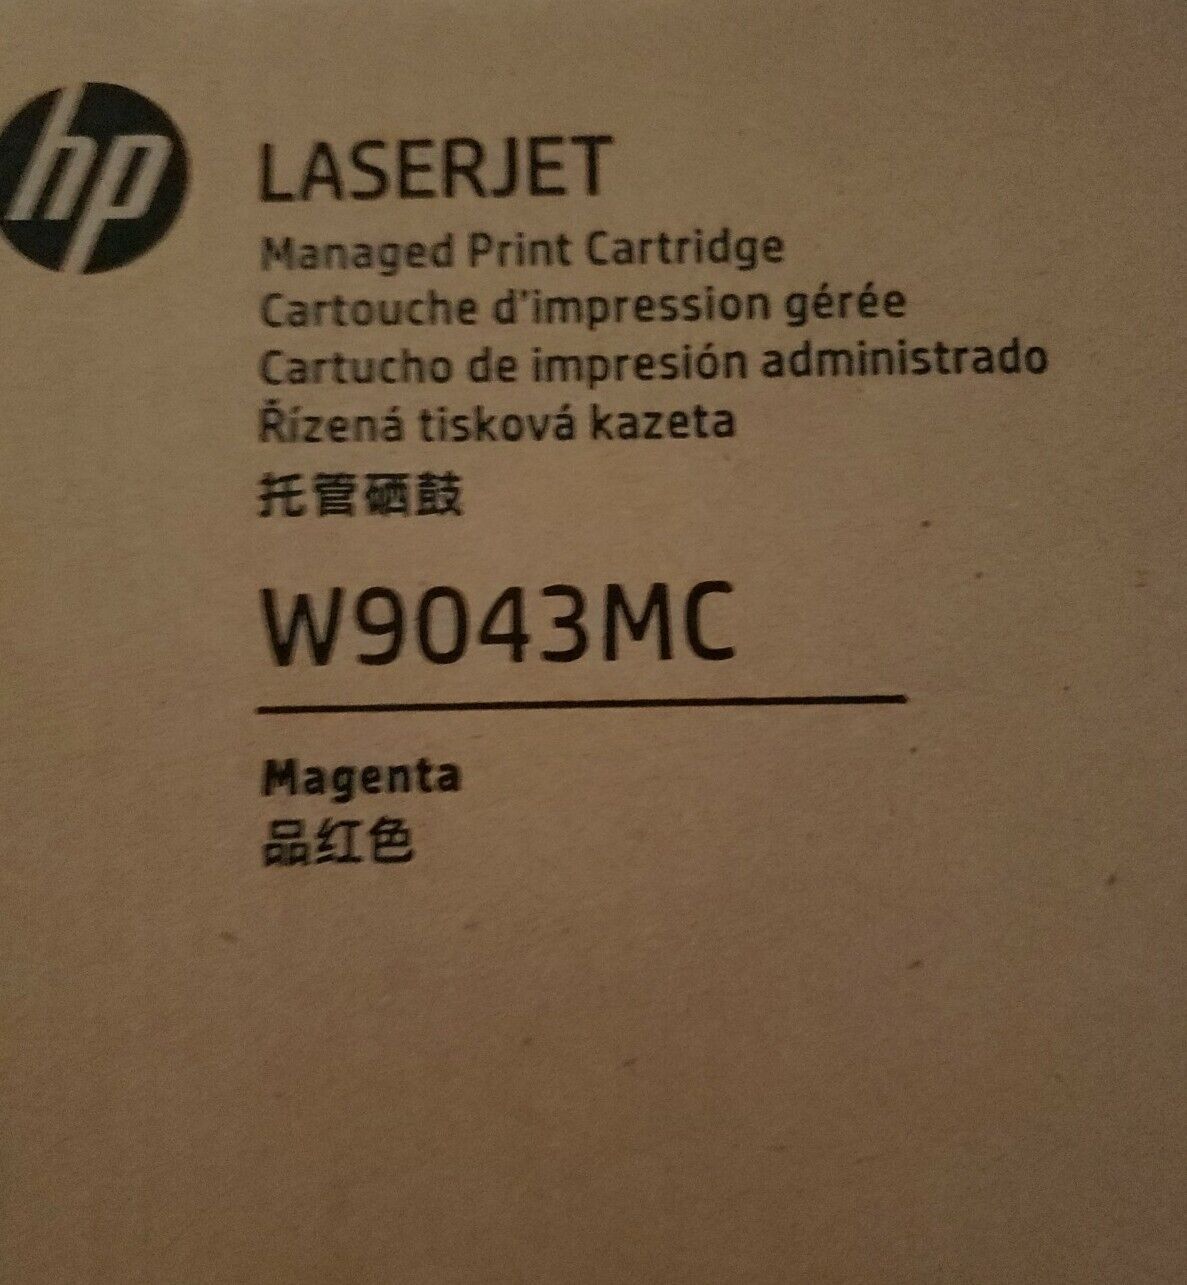 Hp Laserjet W9043MC